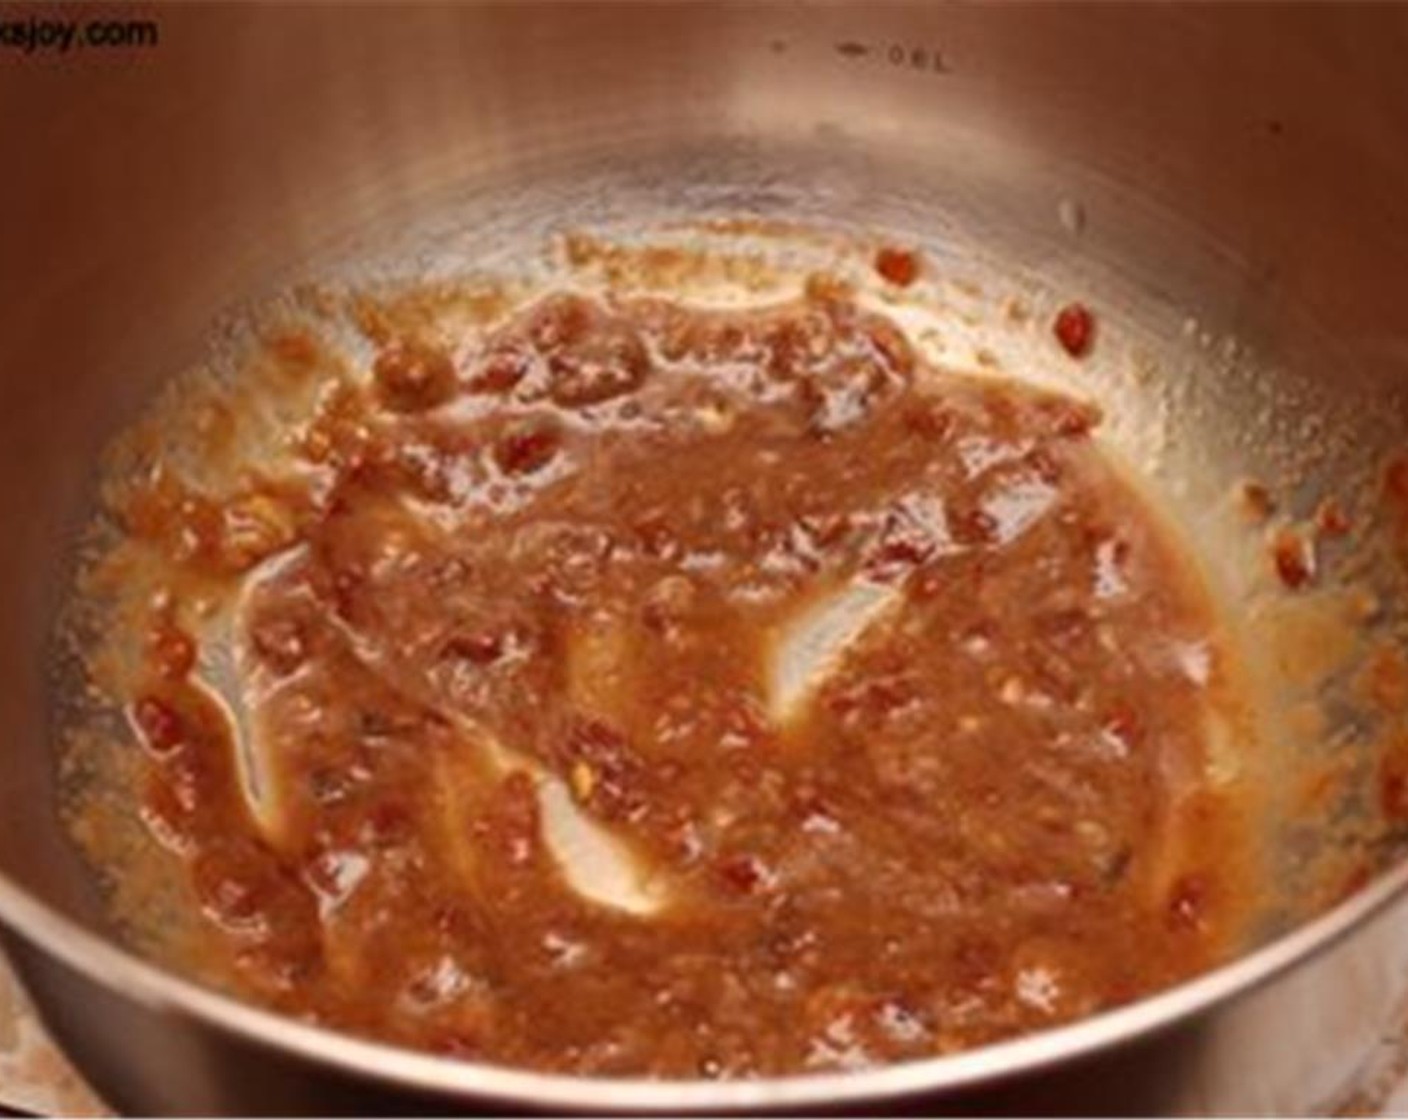 Schritt 2 Sojasauce (1 TL), Ingwer-Knoblauchpaste (1 TL), Chili Sauce (2 Teelöffel) und Zitronensaft (1) in eine grosse Schüssel geben. Gut vermengen, abschmecken und bei Bedarf zusätzlich nachwürzen.